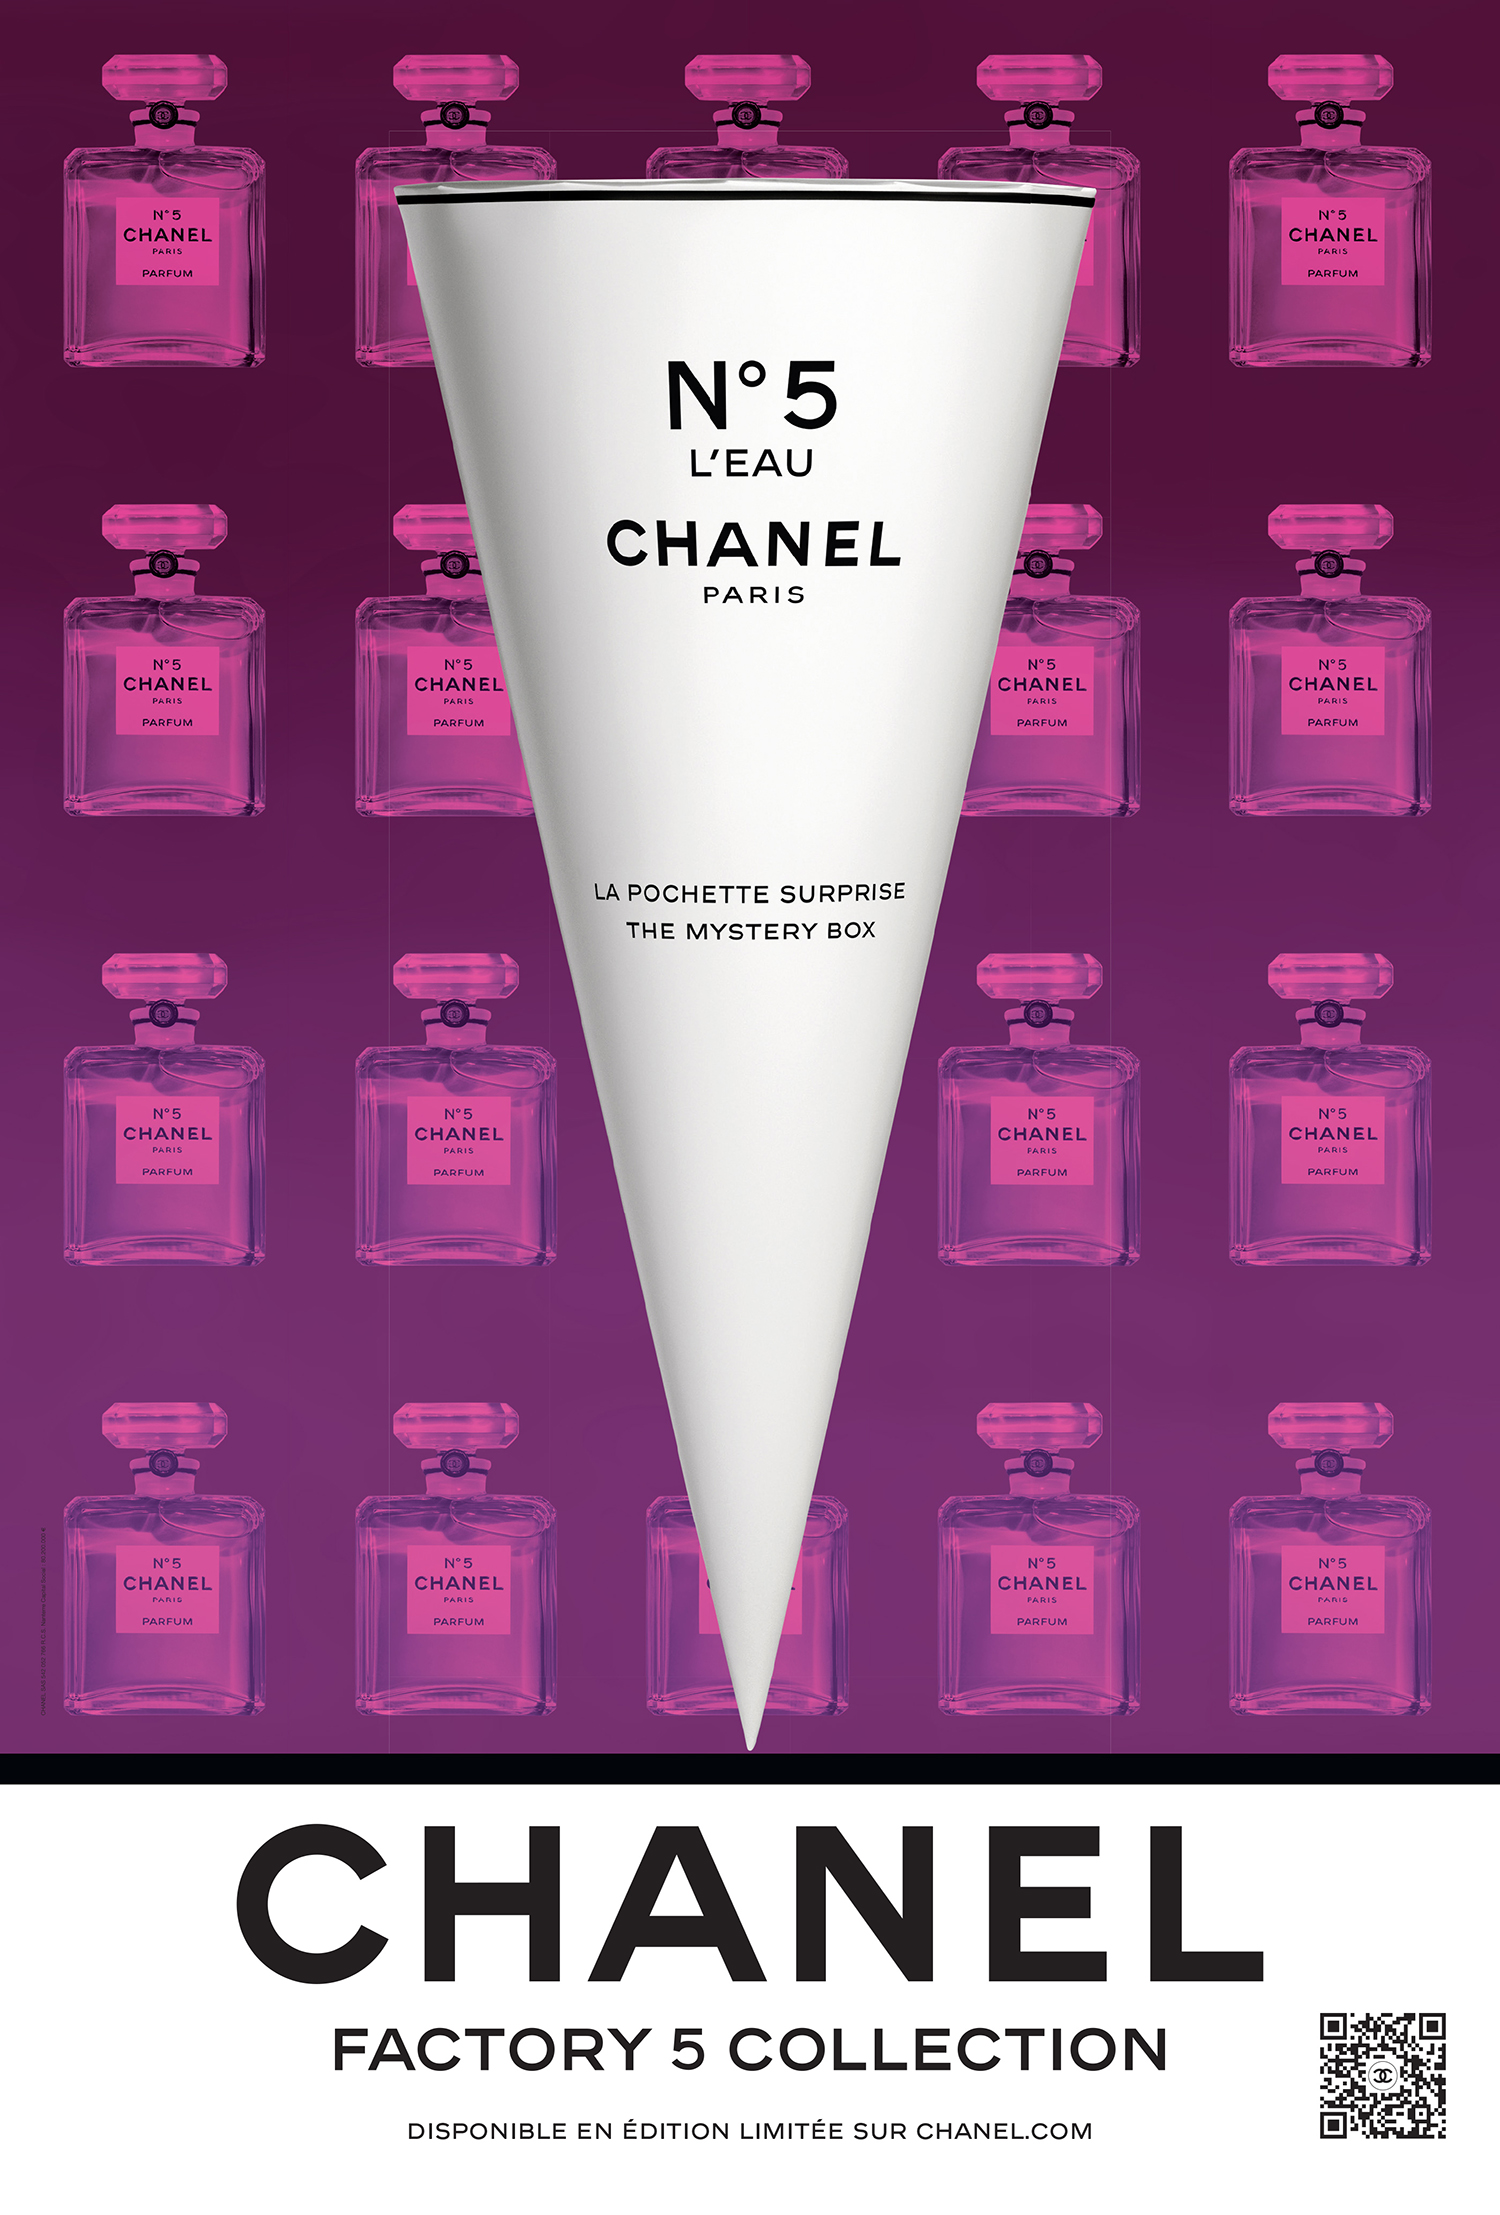 Chanel Factory 5 : Un pop-up Store arty pour célèbrer les 100 ans du N° 5 -  FIRSTLUXE